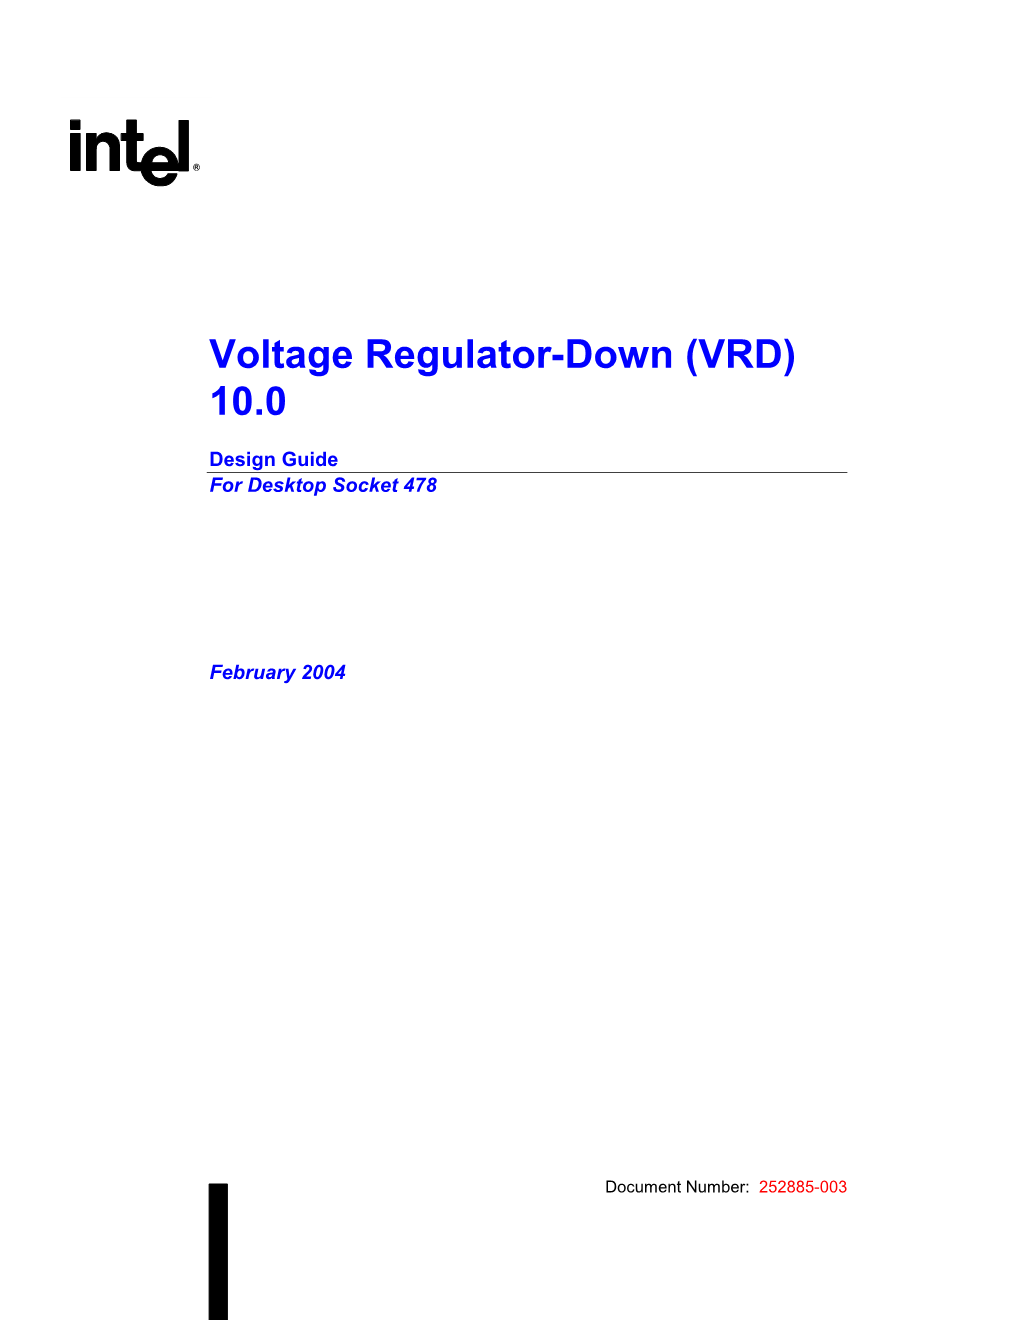 Voltage Regulator-Down (VRD) 10.0 Design Guide